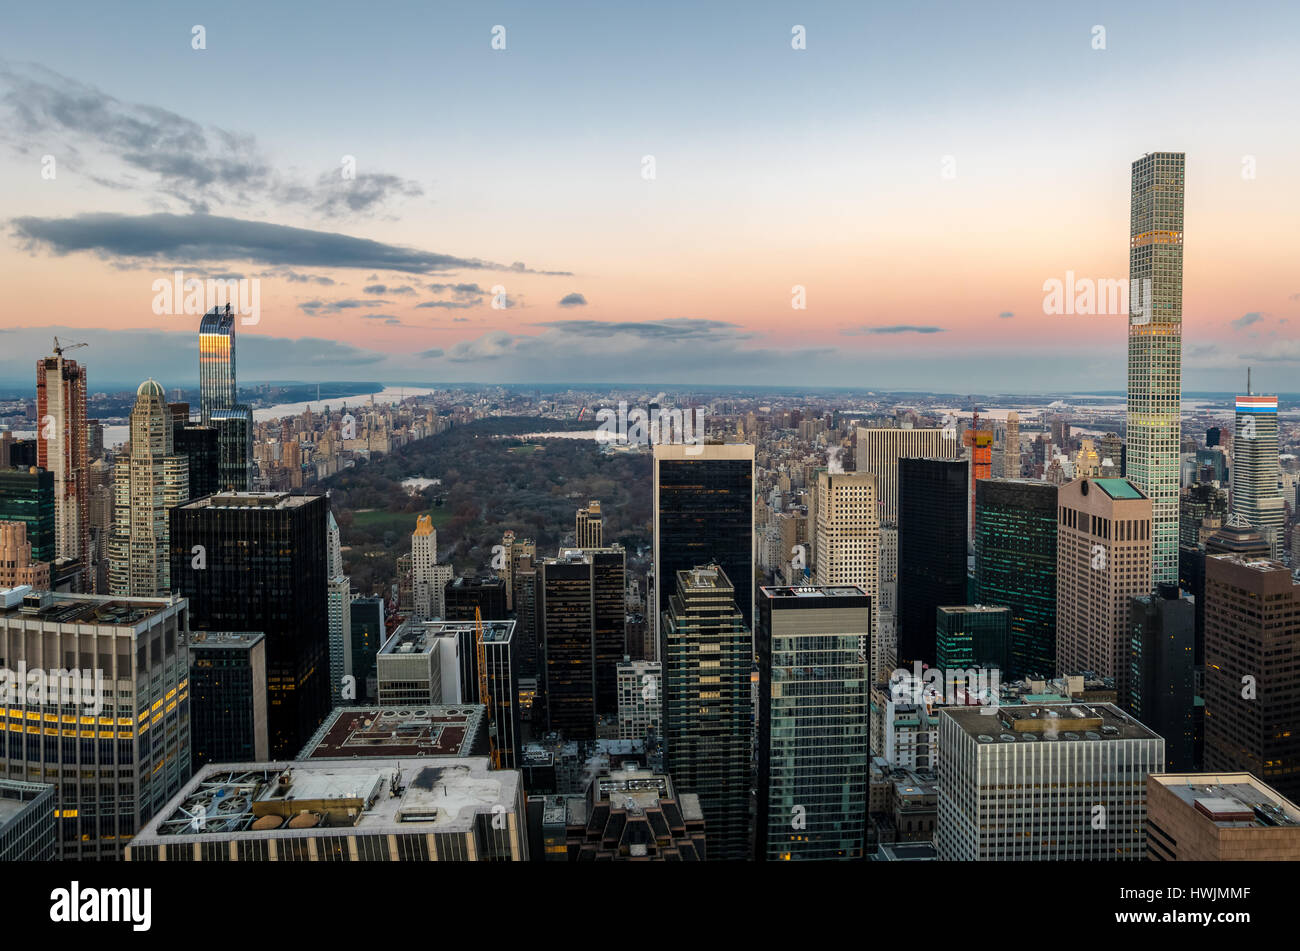 Vue panoramique vue aérienne de Manhattan et Central Park au coucher du soleil - New York, USA Banque D'Images